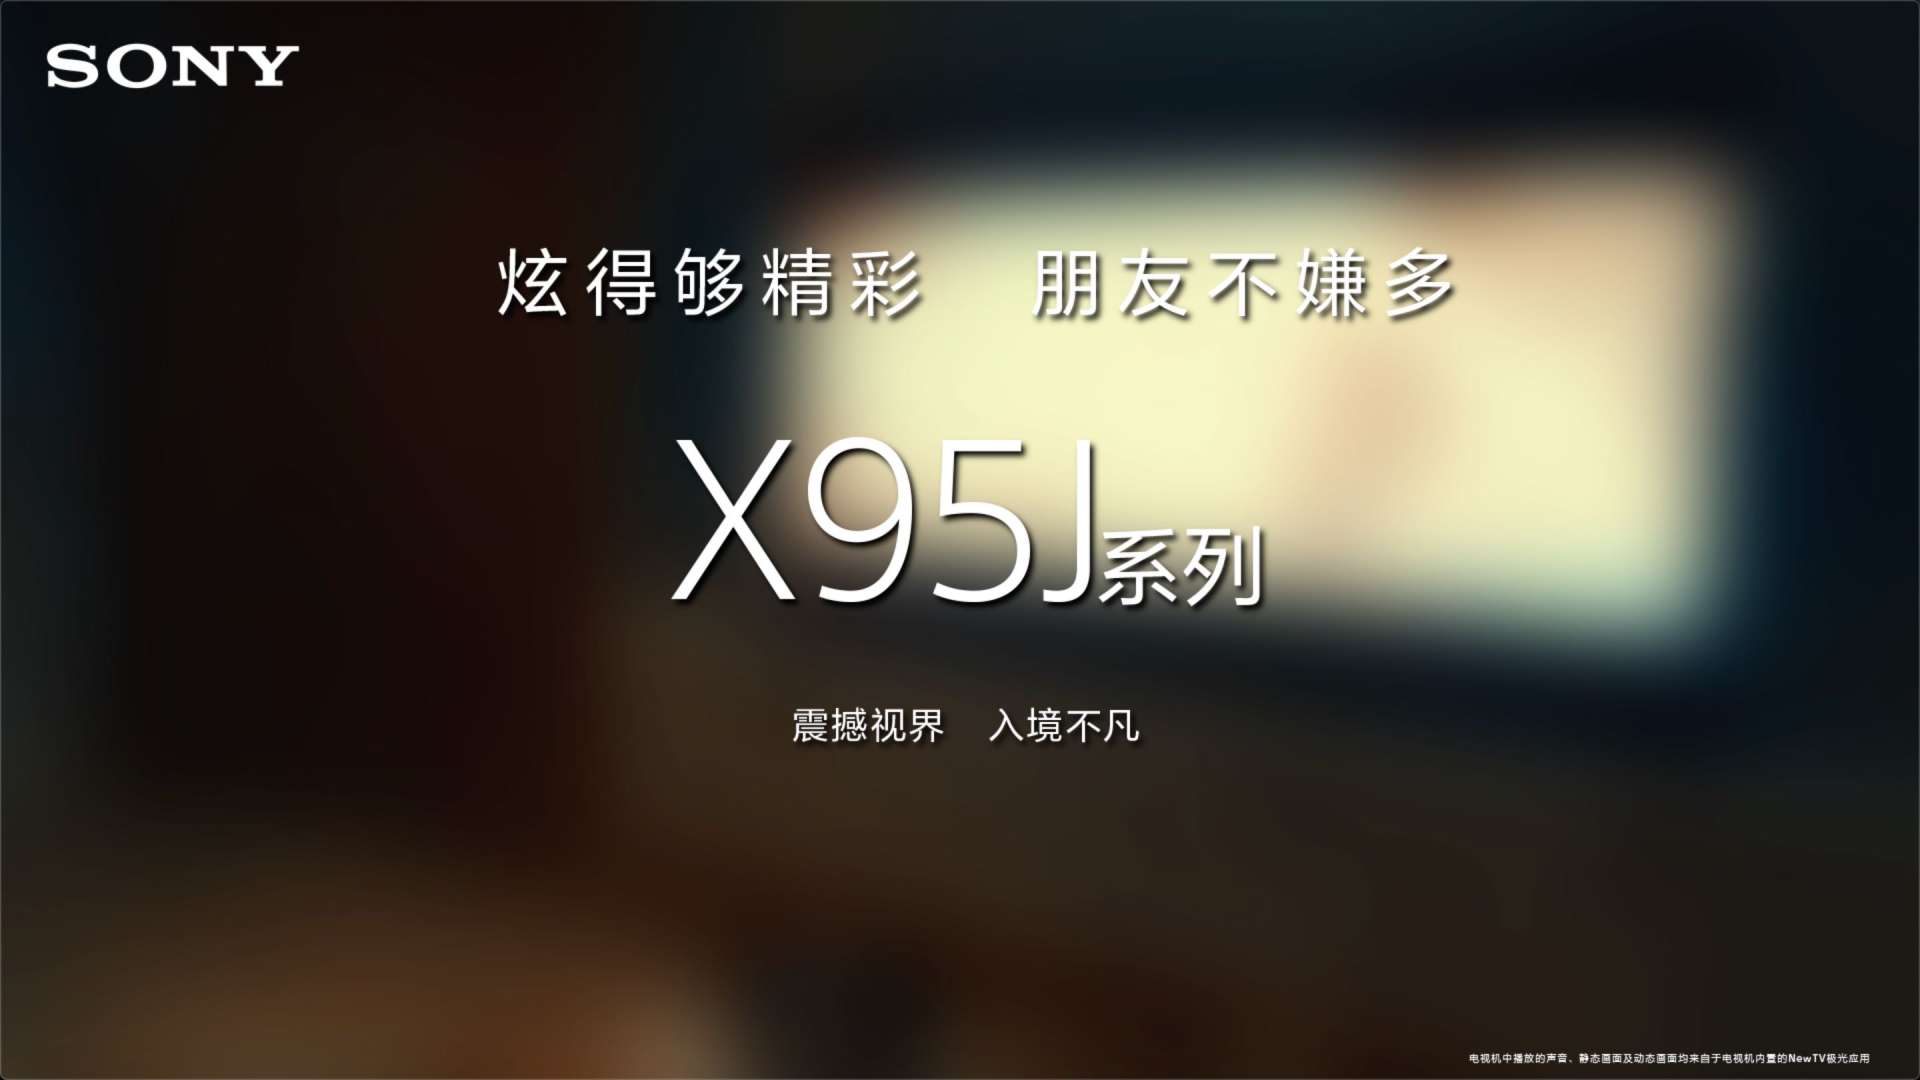 Sony-《影音篇》X95JX系列